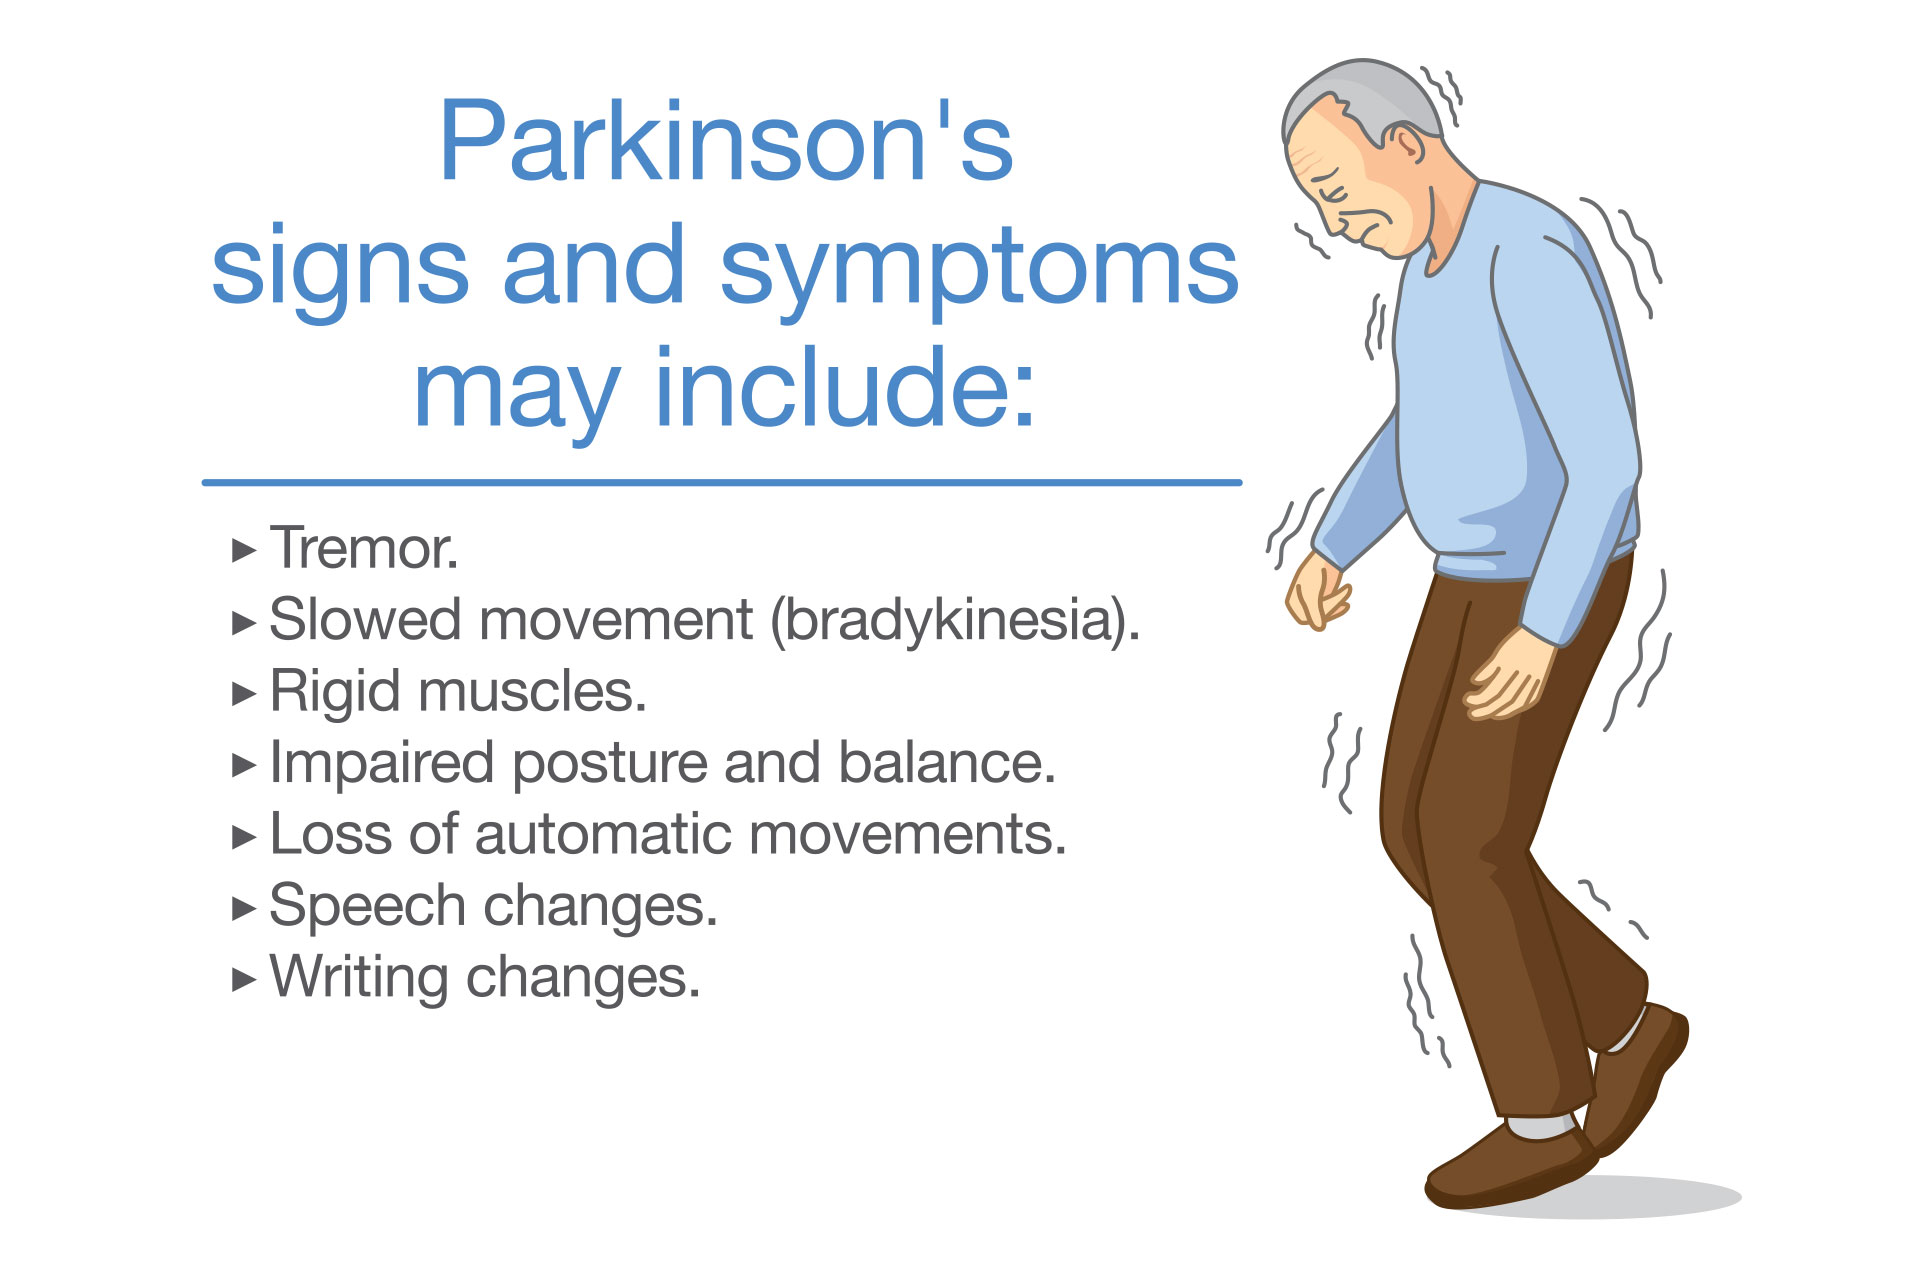 parkinson's symptoms